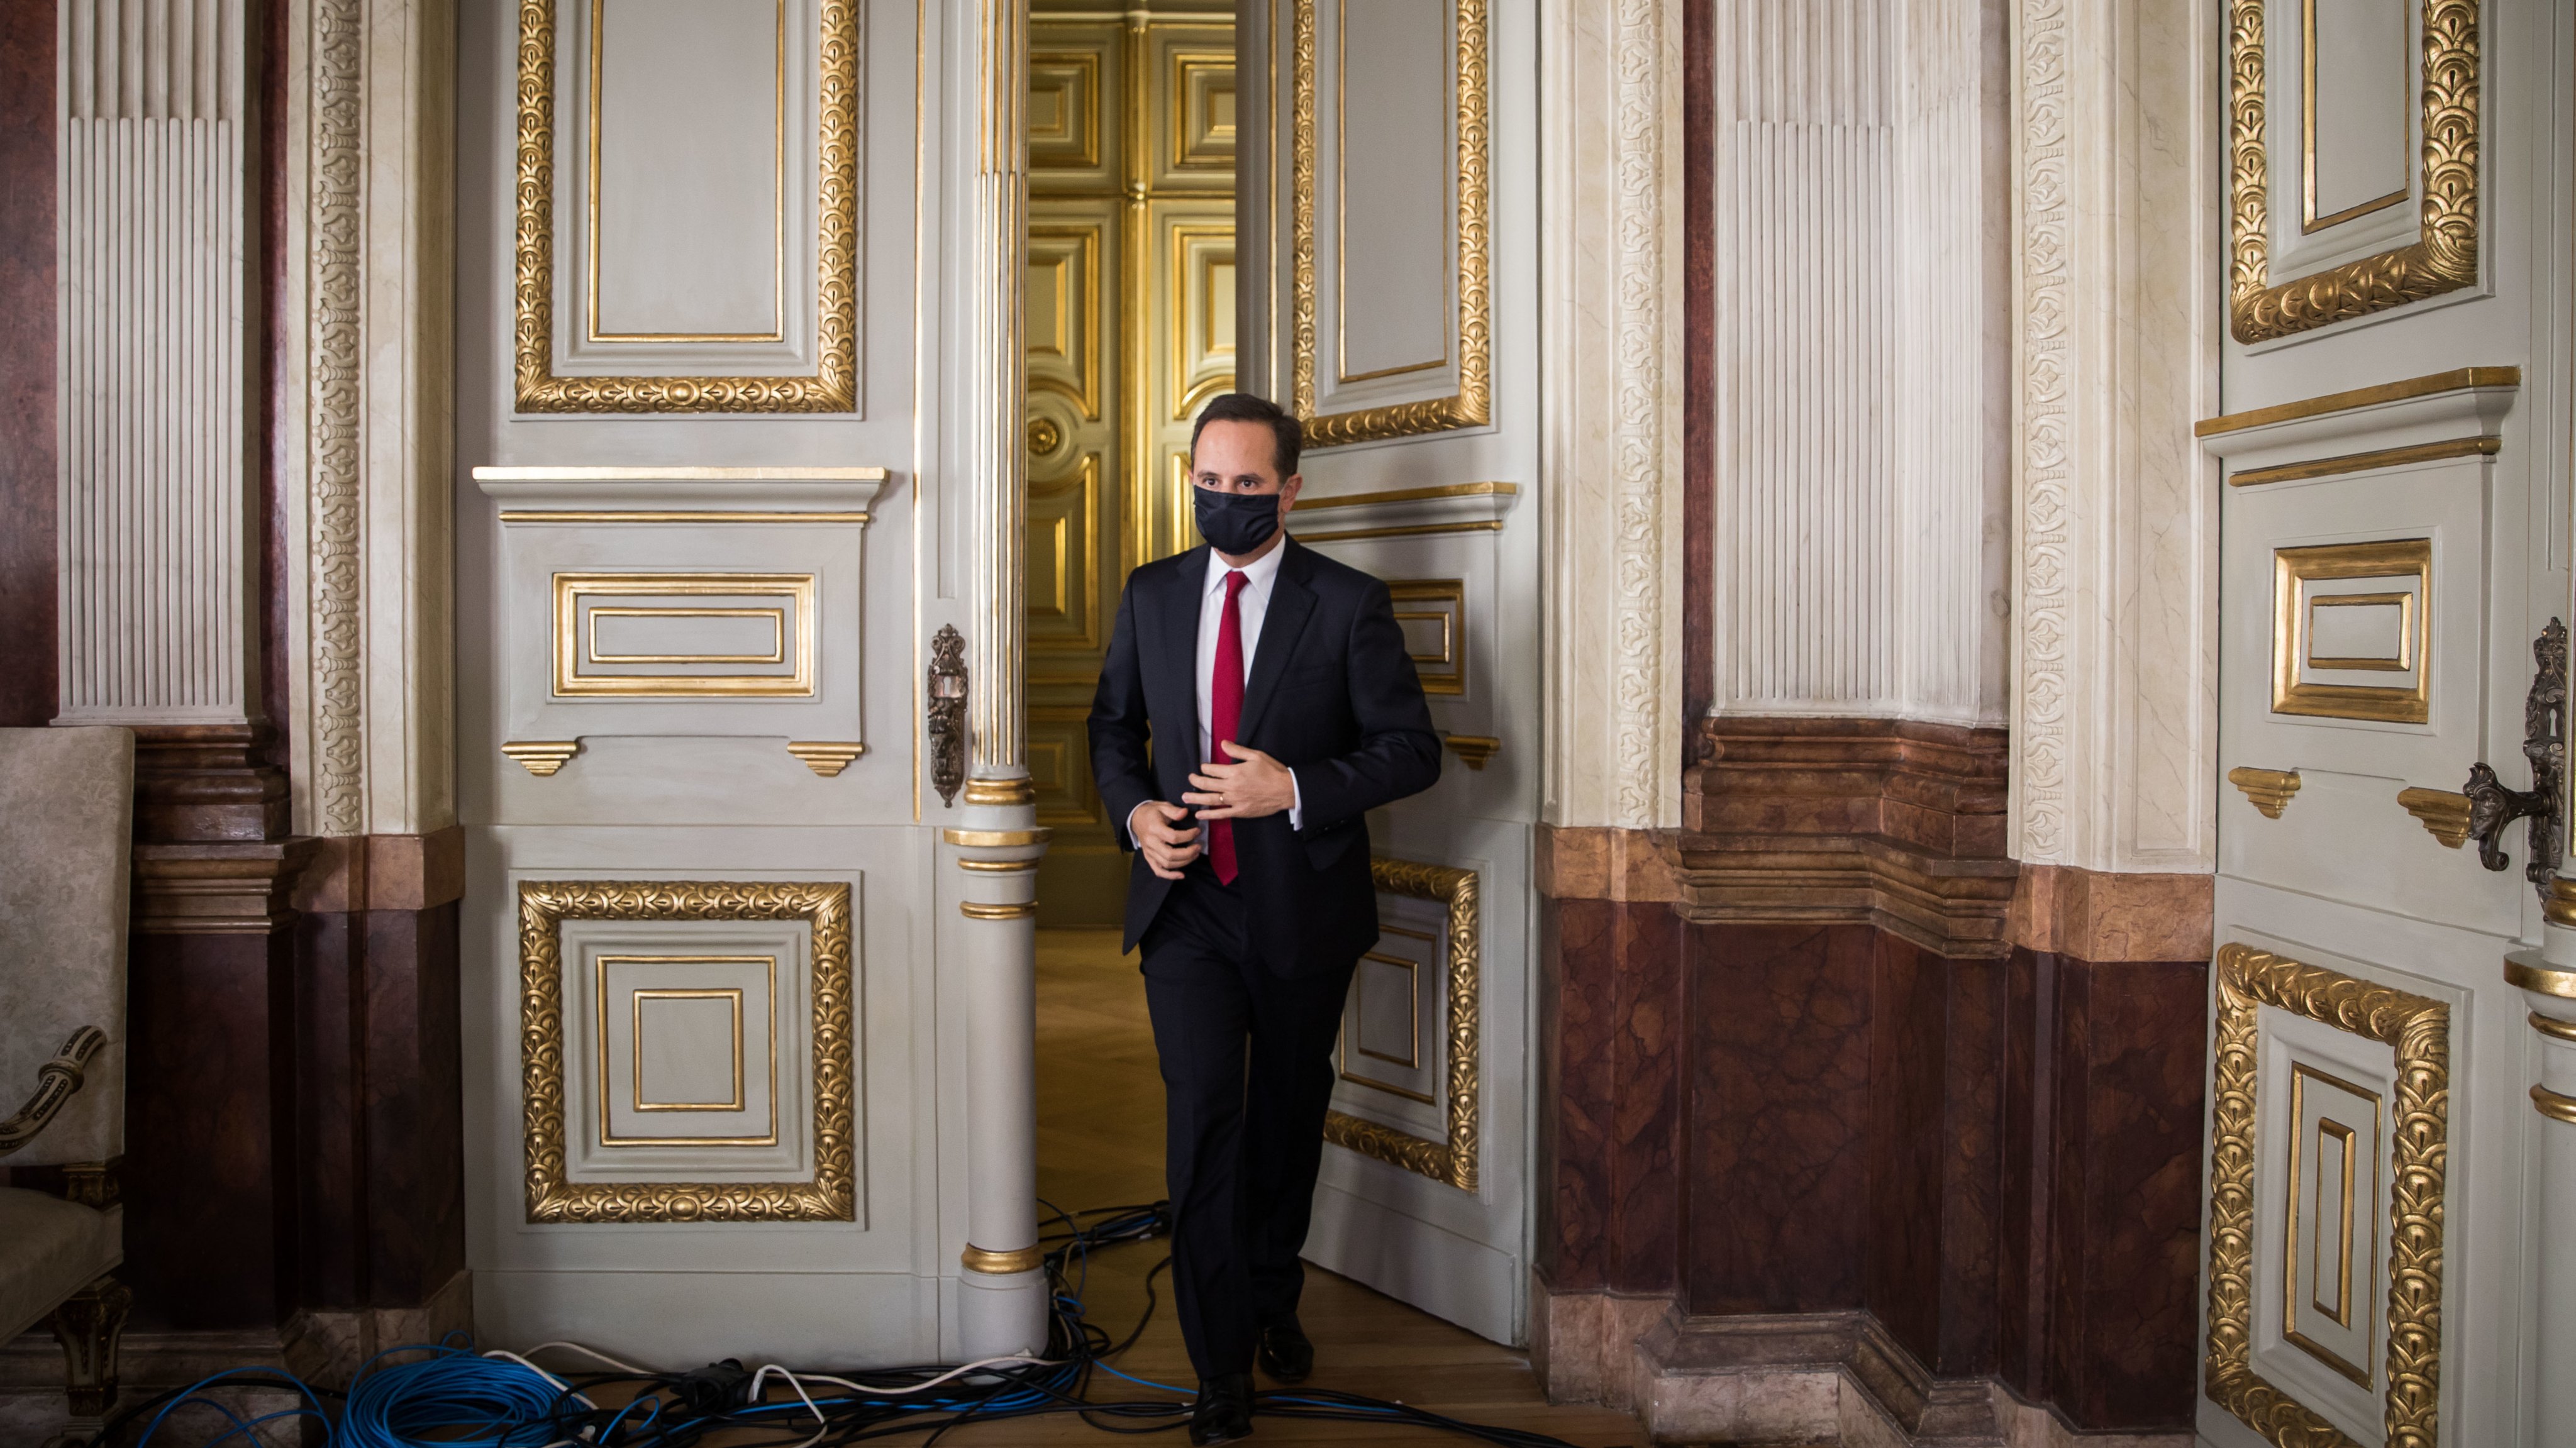 A Câmara de Lisboa vai cortar na despesa para combater o impacto provocado pela pandemia de Covid-19